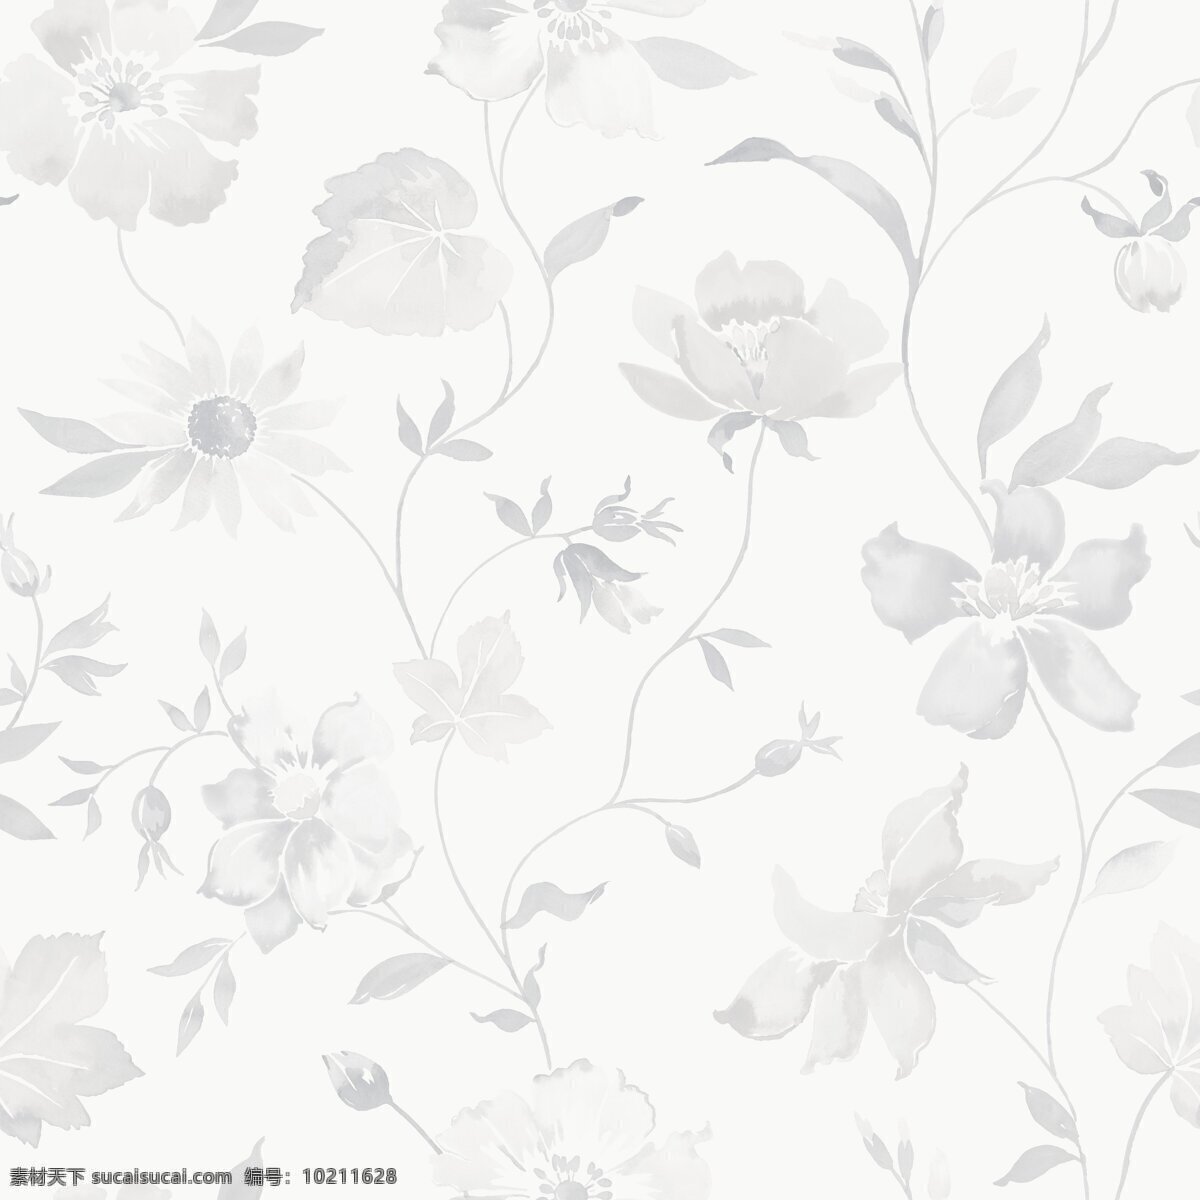 现代 简约 清新 灰色 植物 壁纸 图案 壁纸图案 花朵图案 灰色植物 浅色壁纸 植物壁纸